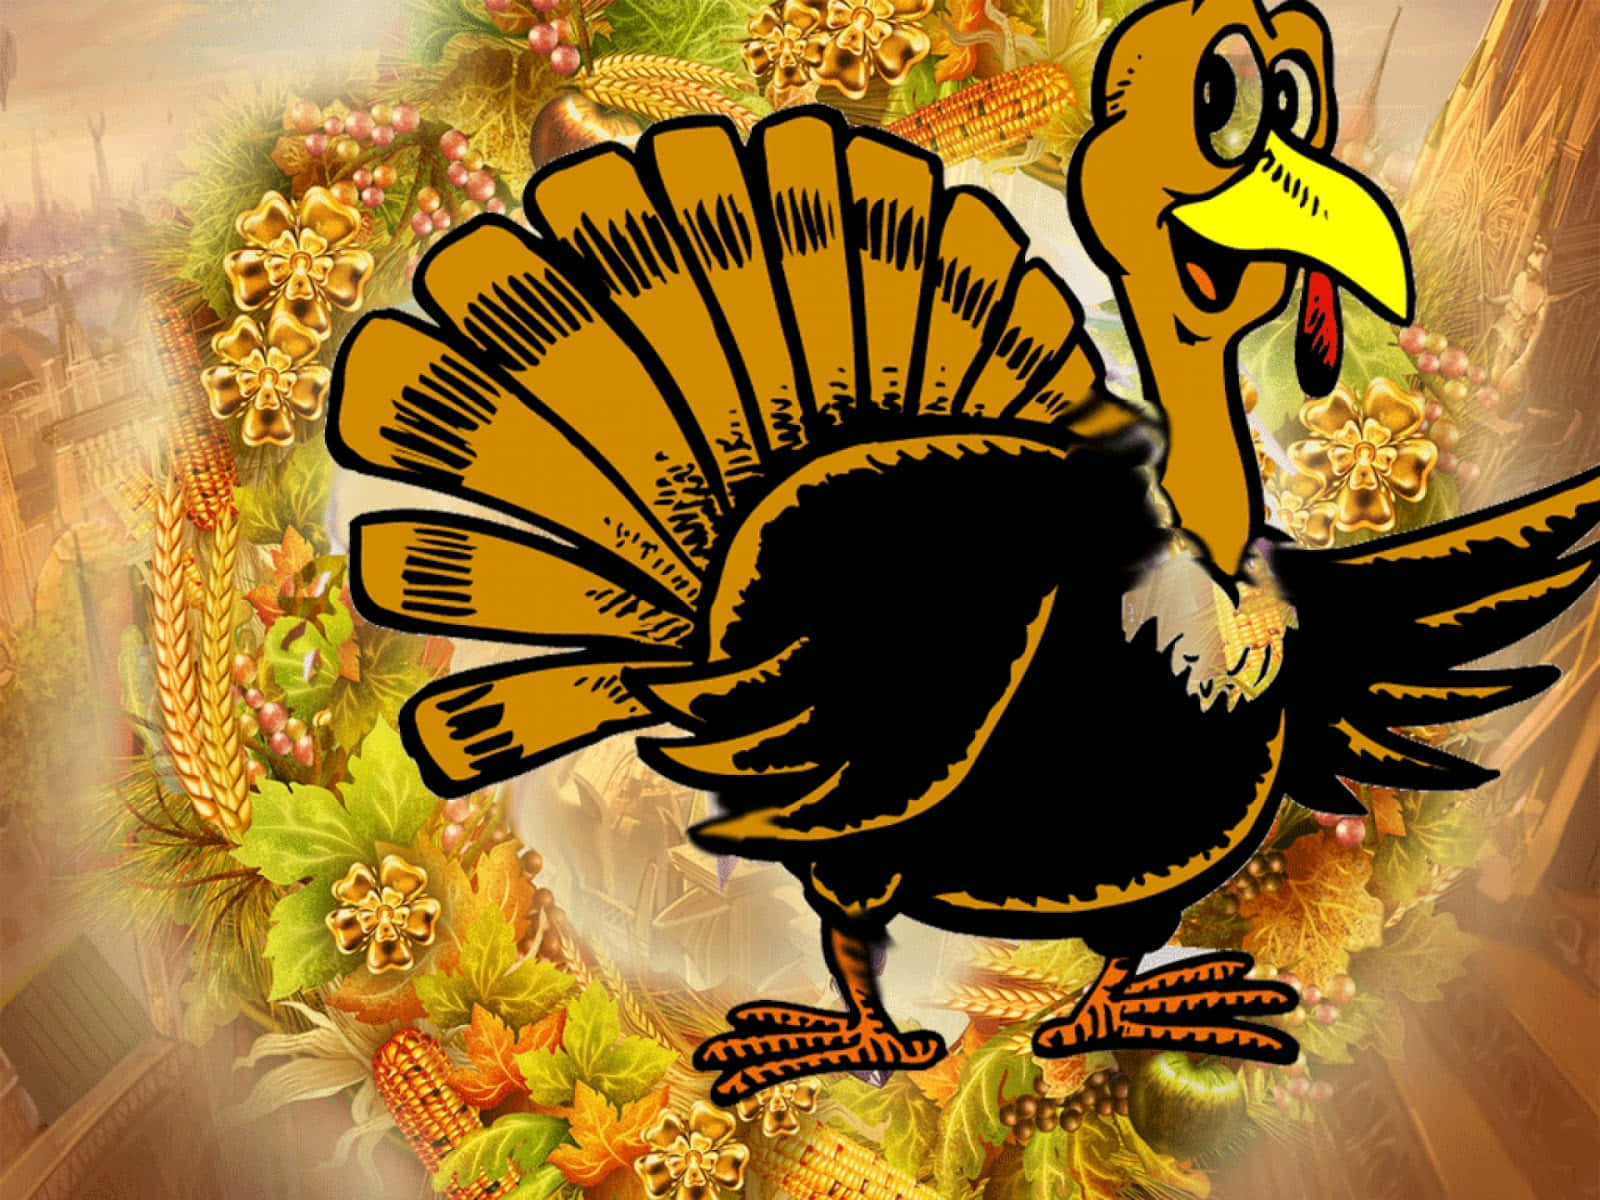 Festlichecartoonfiguren Feiern Thanksgiving Wallpaper